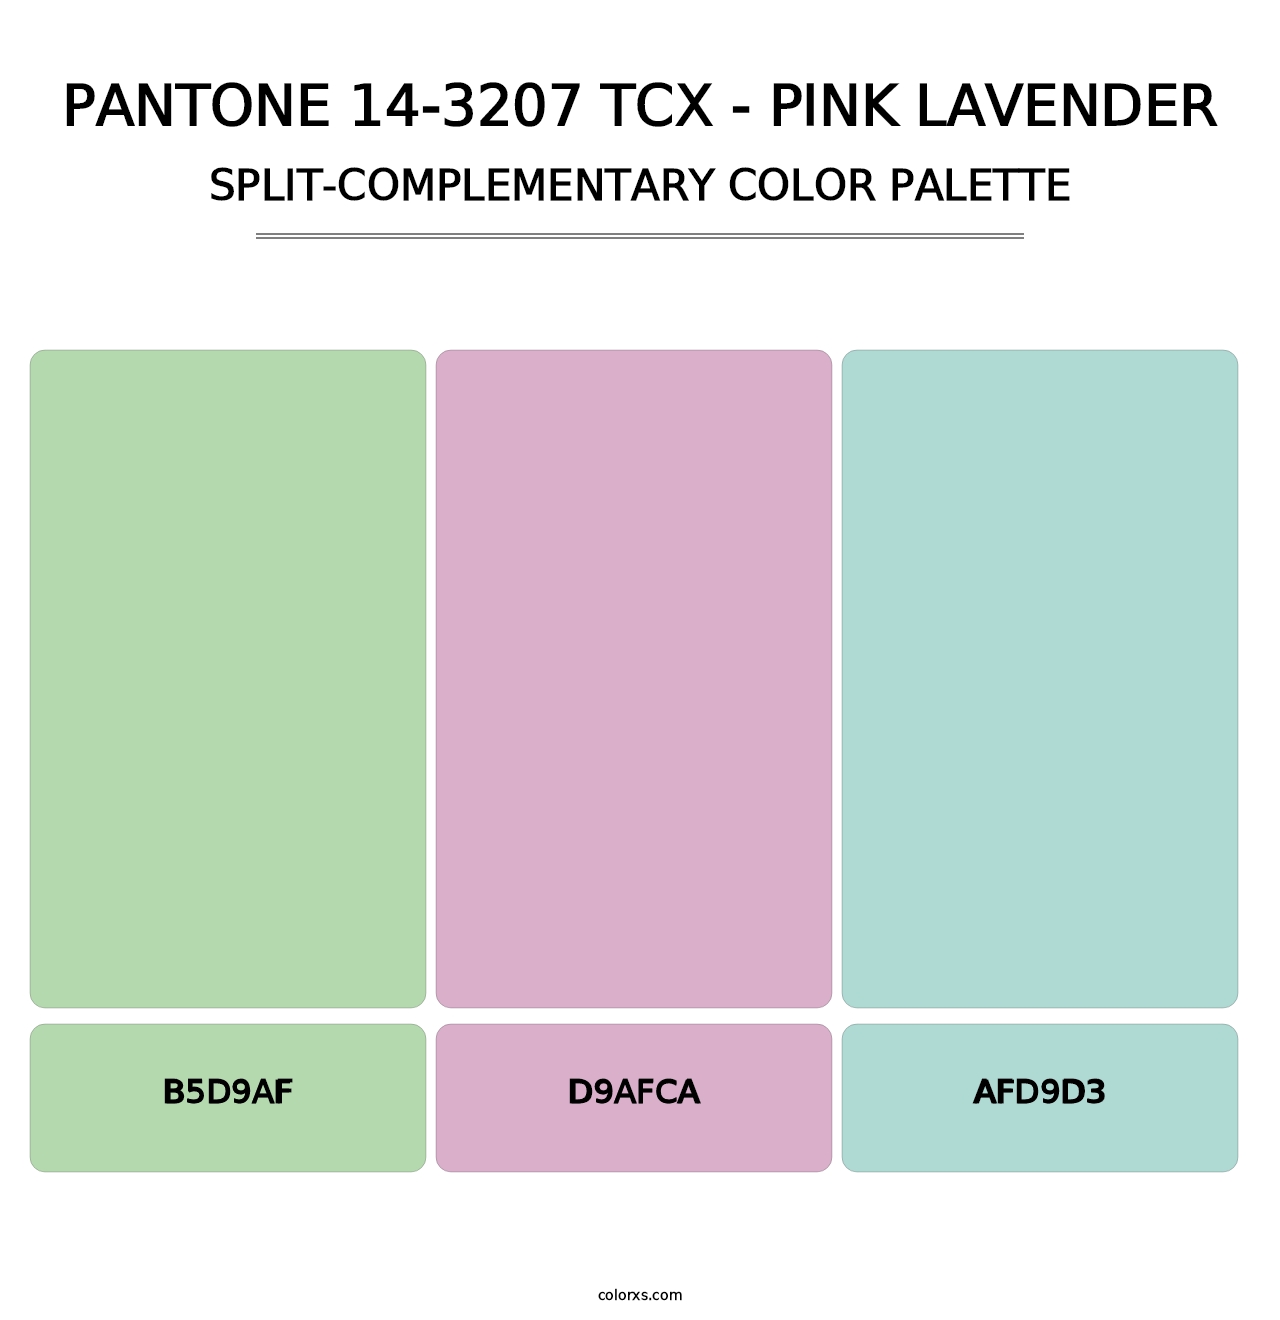 PANTONE 14-3207 TCX - Pink Lavender - Split-Complementary Color Palette